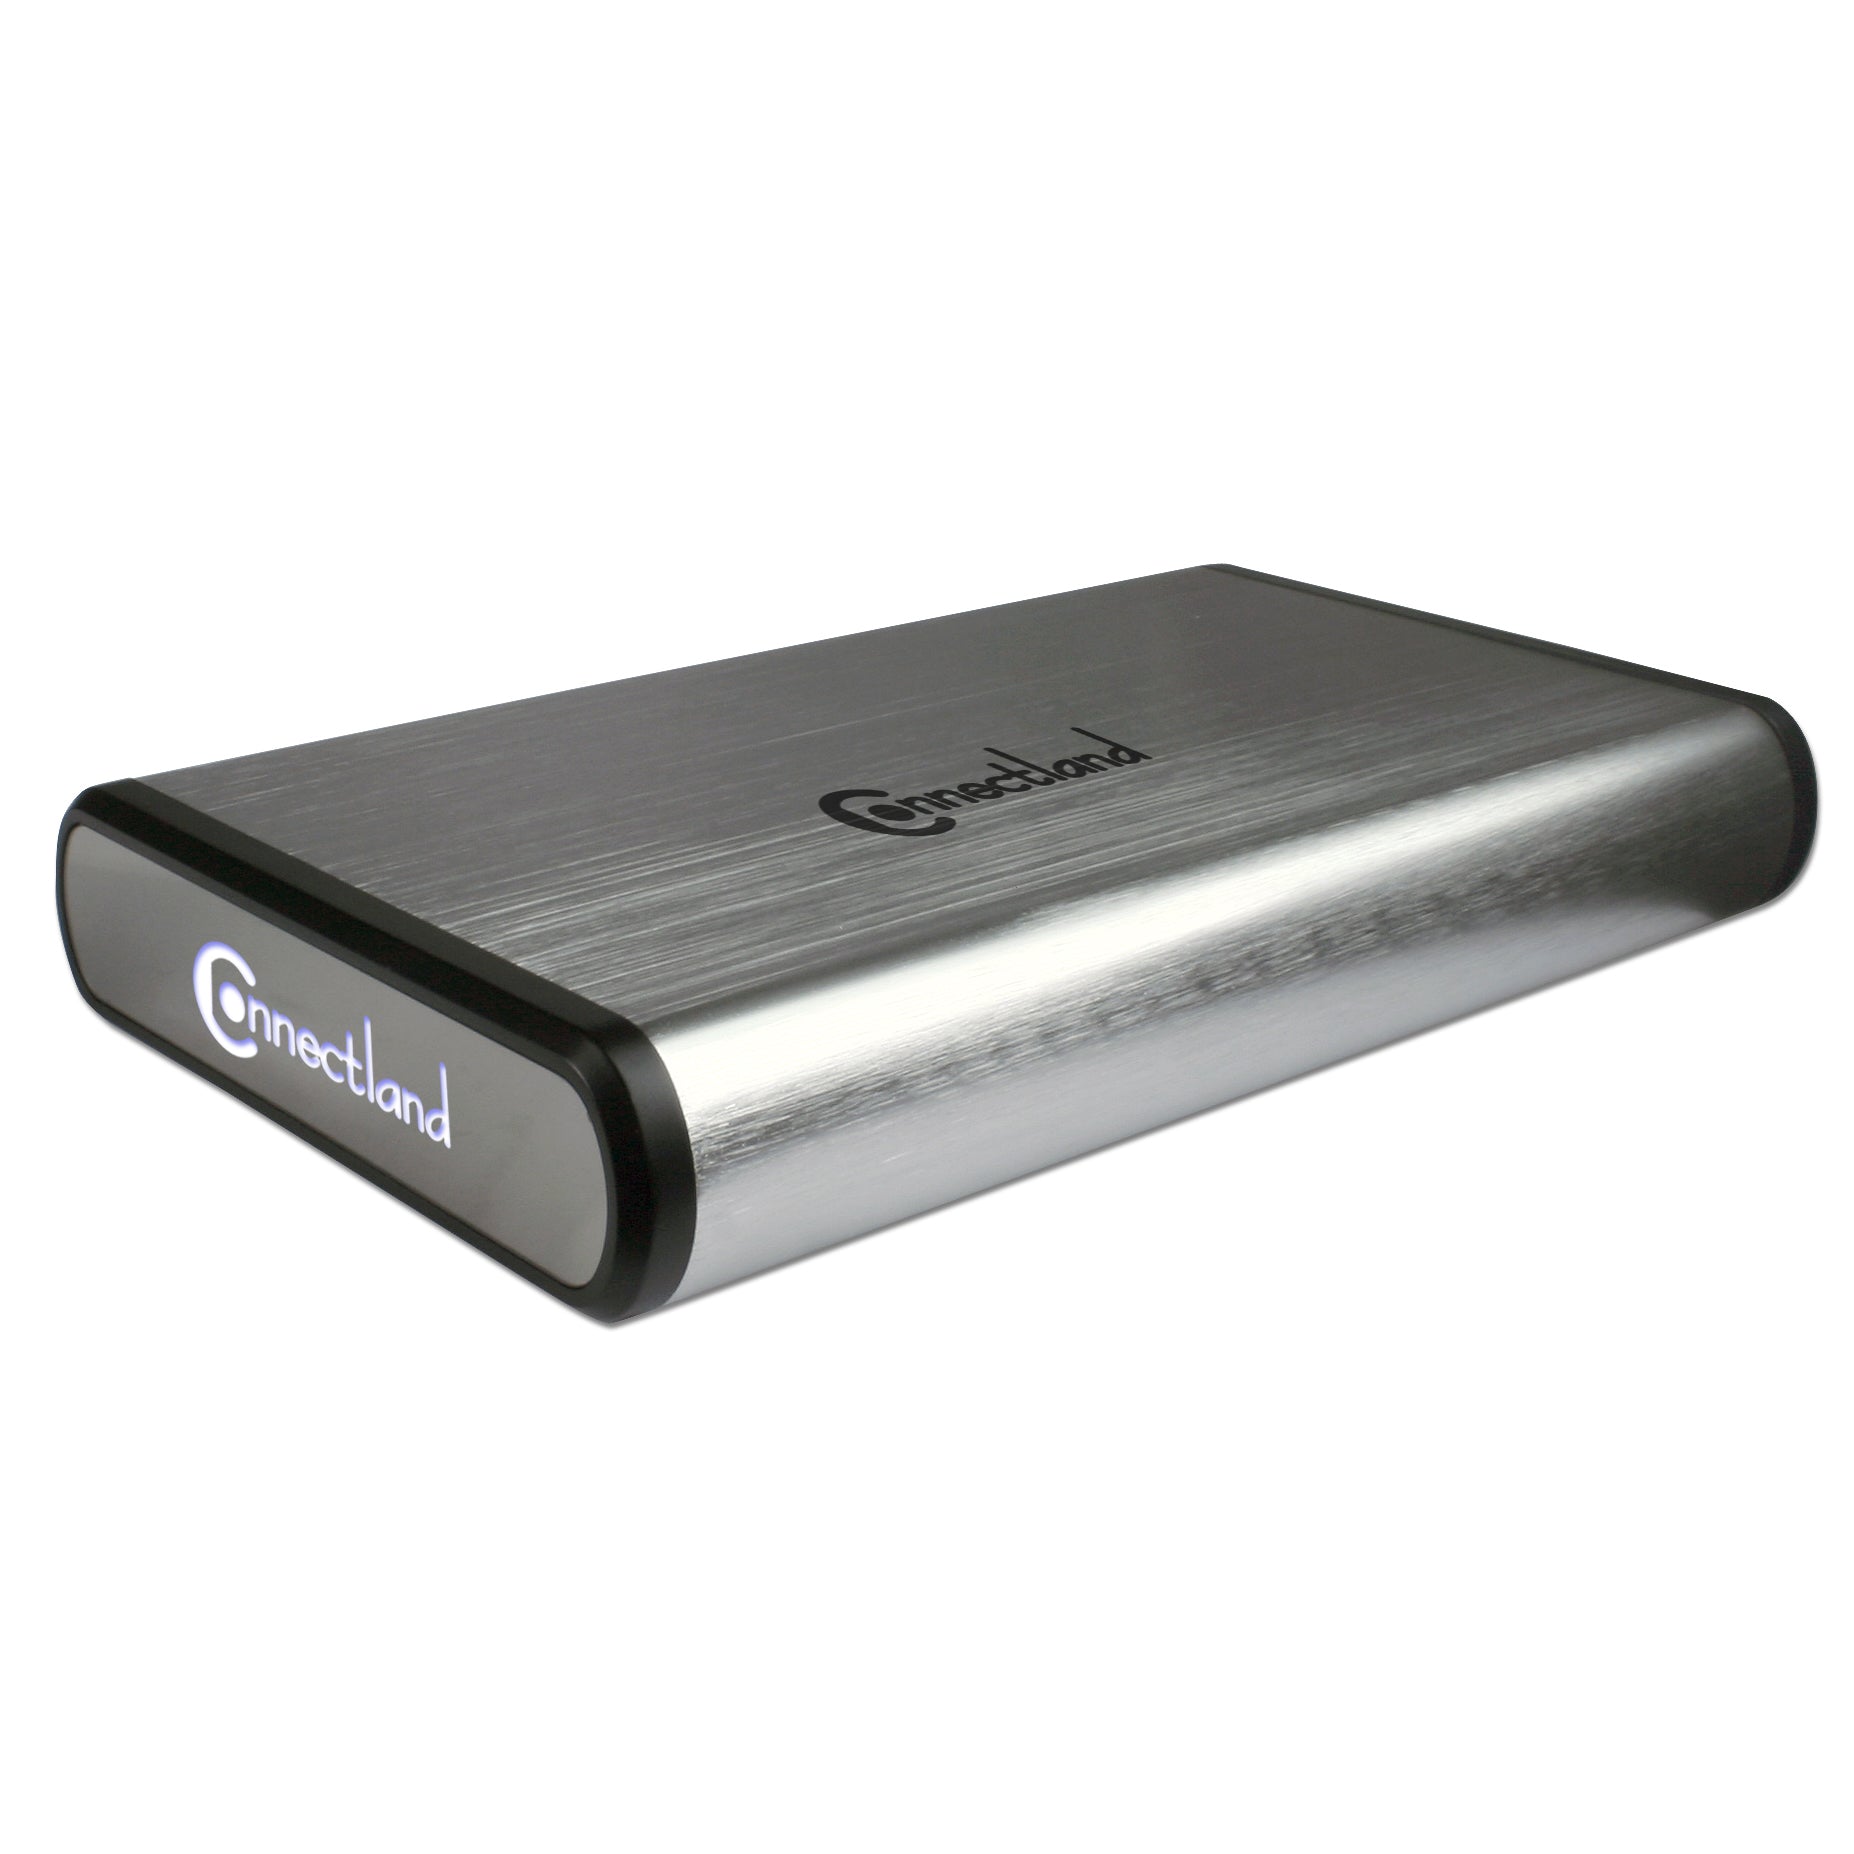 Connectland - Boitier externe USB 3.0 pour disque dur 3.5" Sata